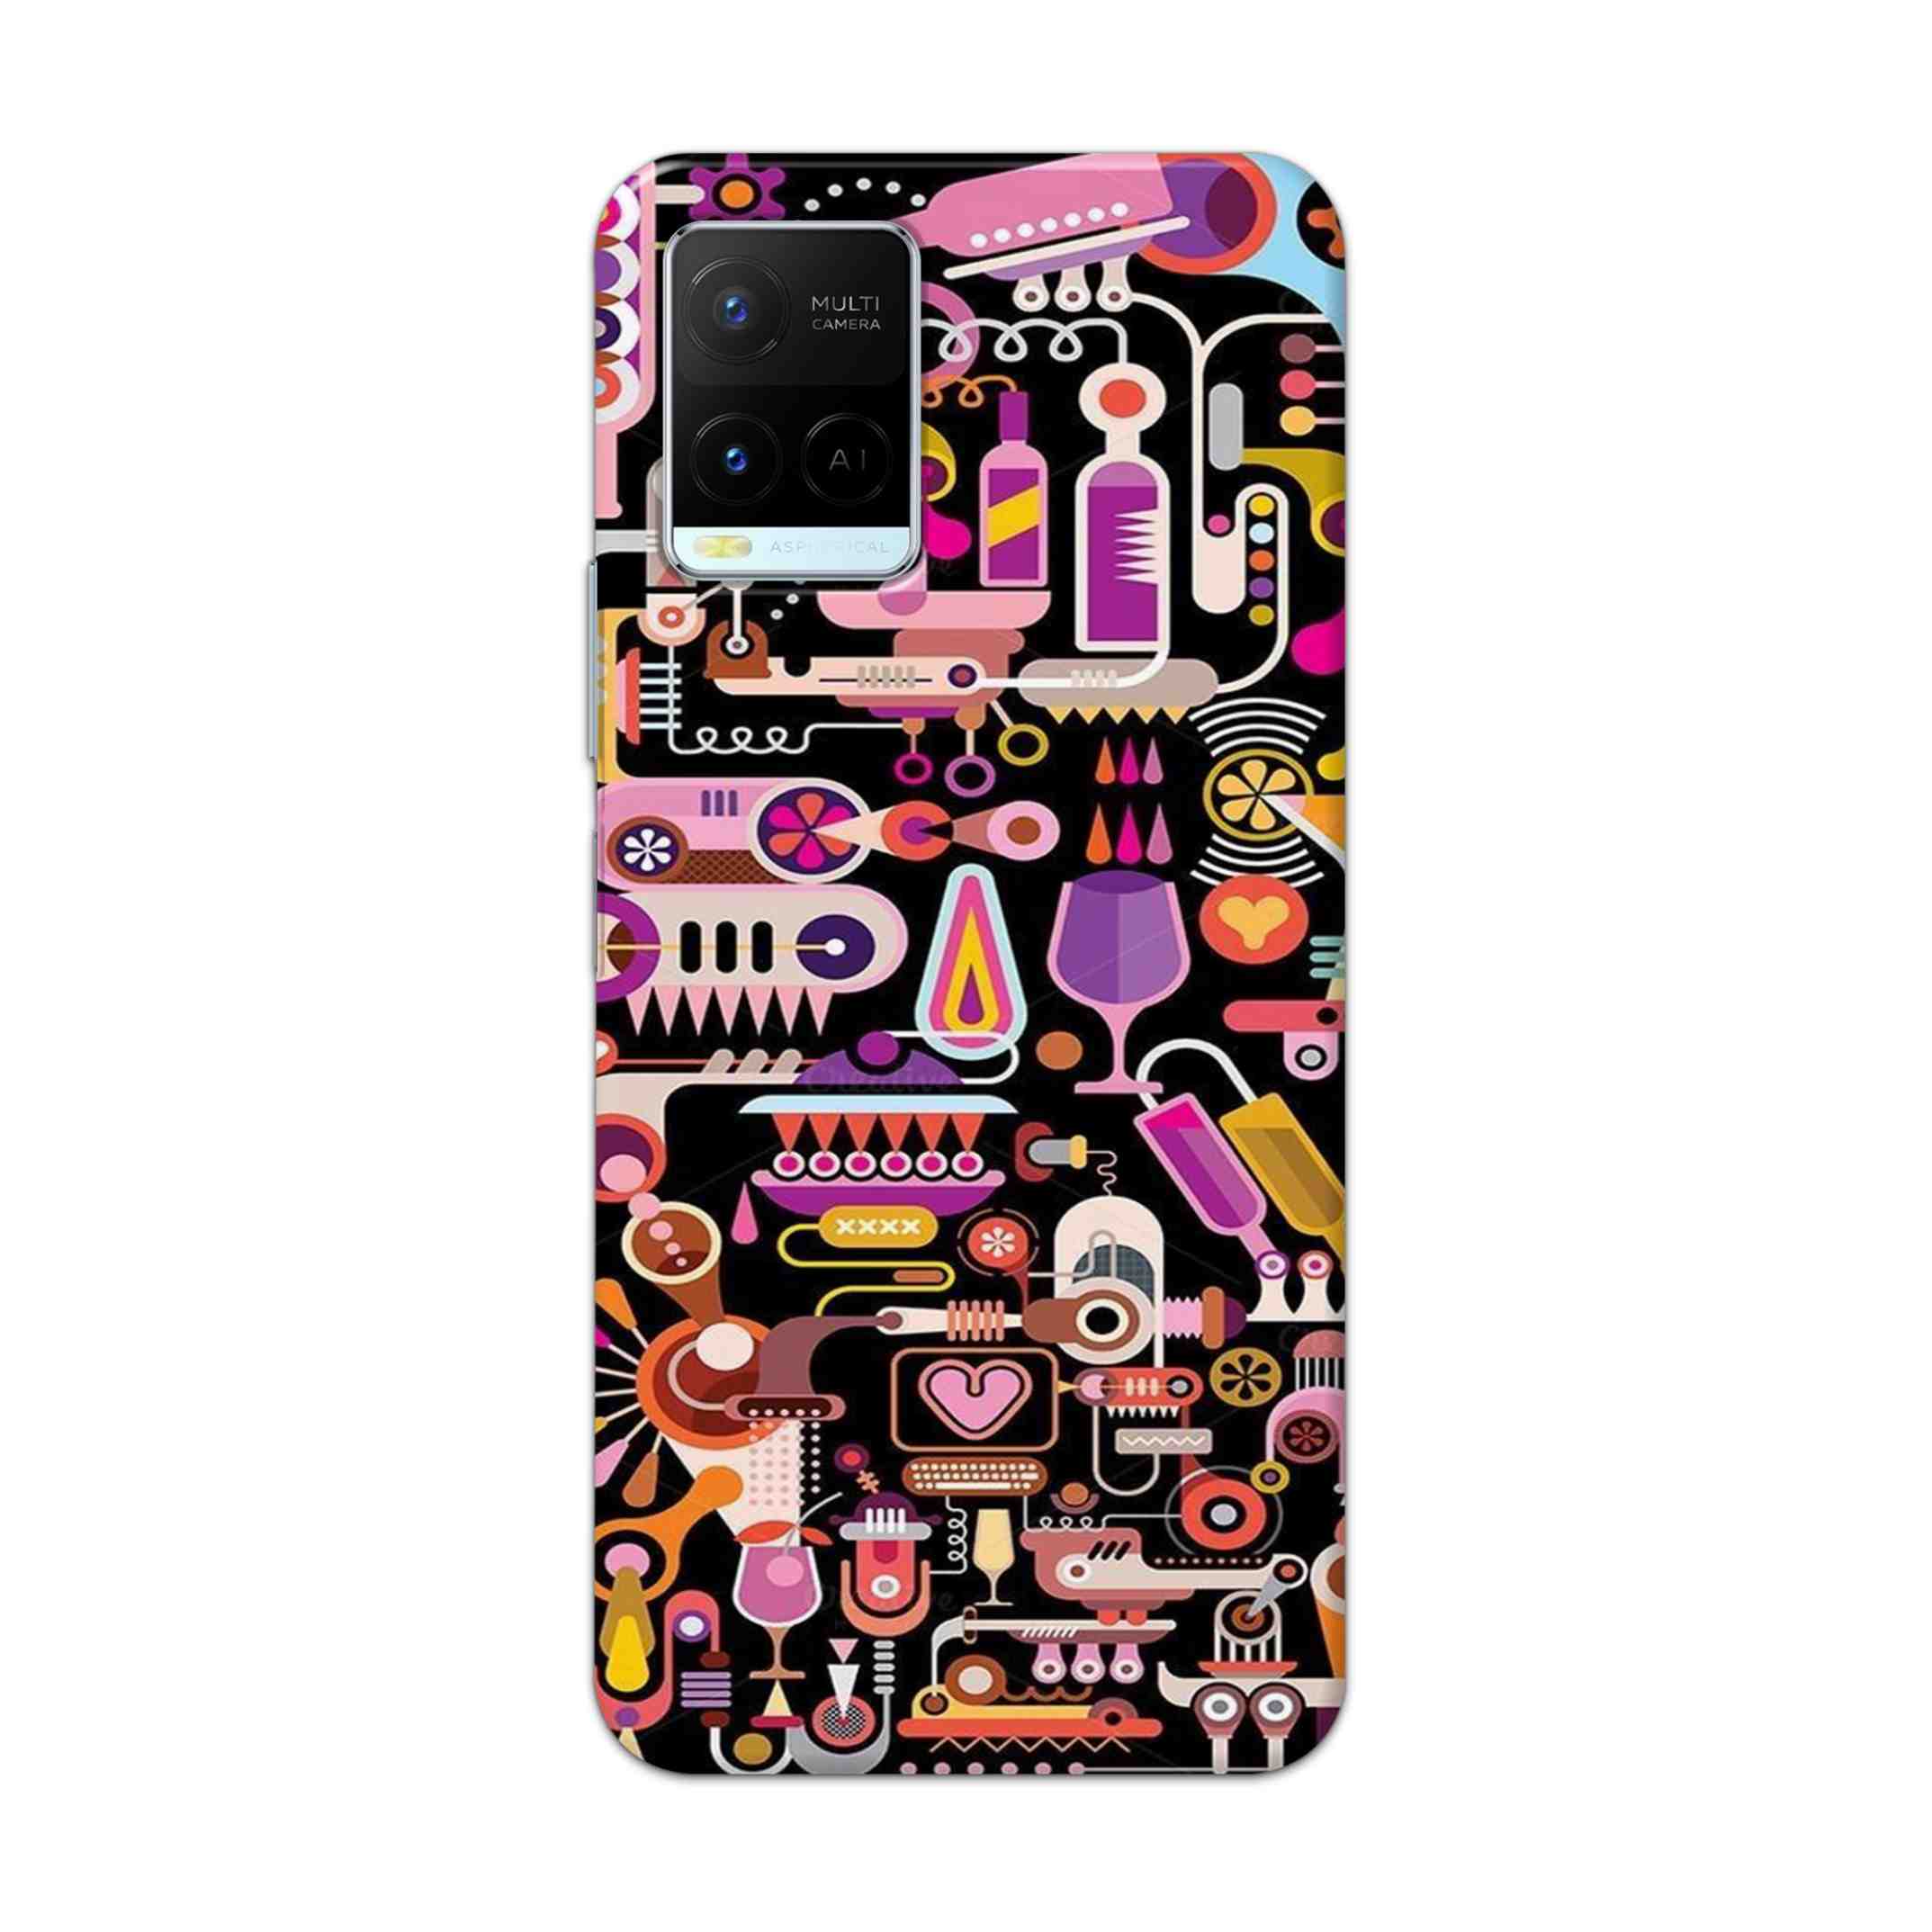 Buy Lab Art Hard Back Mobile Phone Case Cover For Vivo Y21 2021 Online